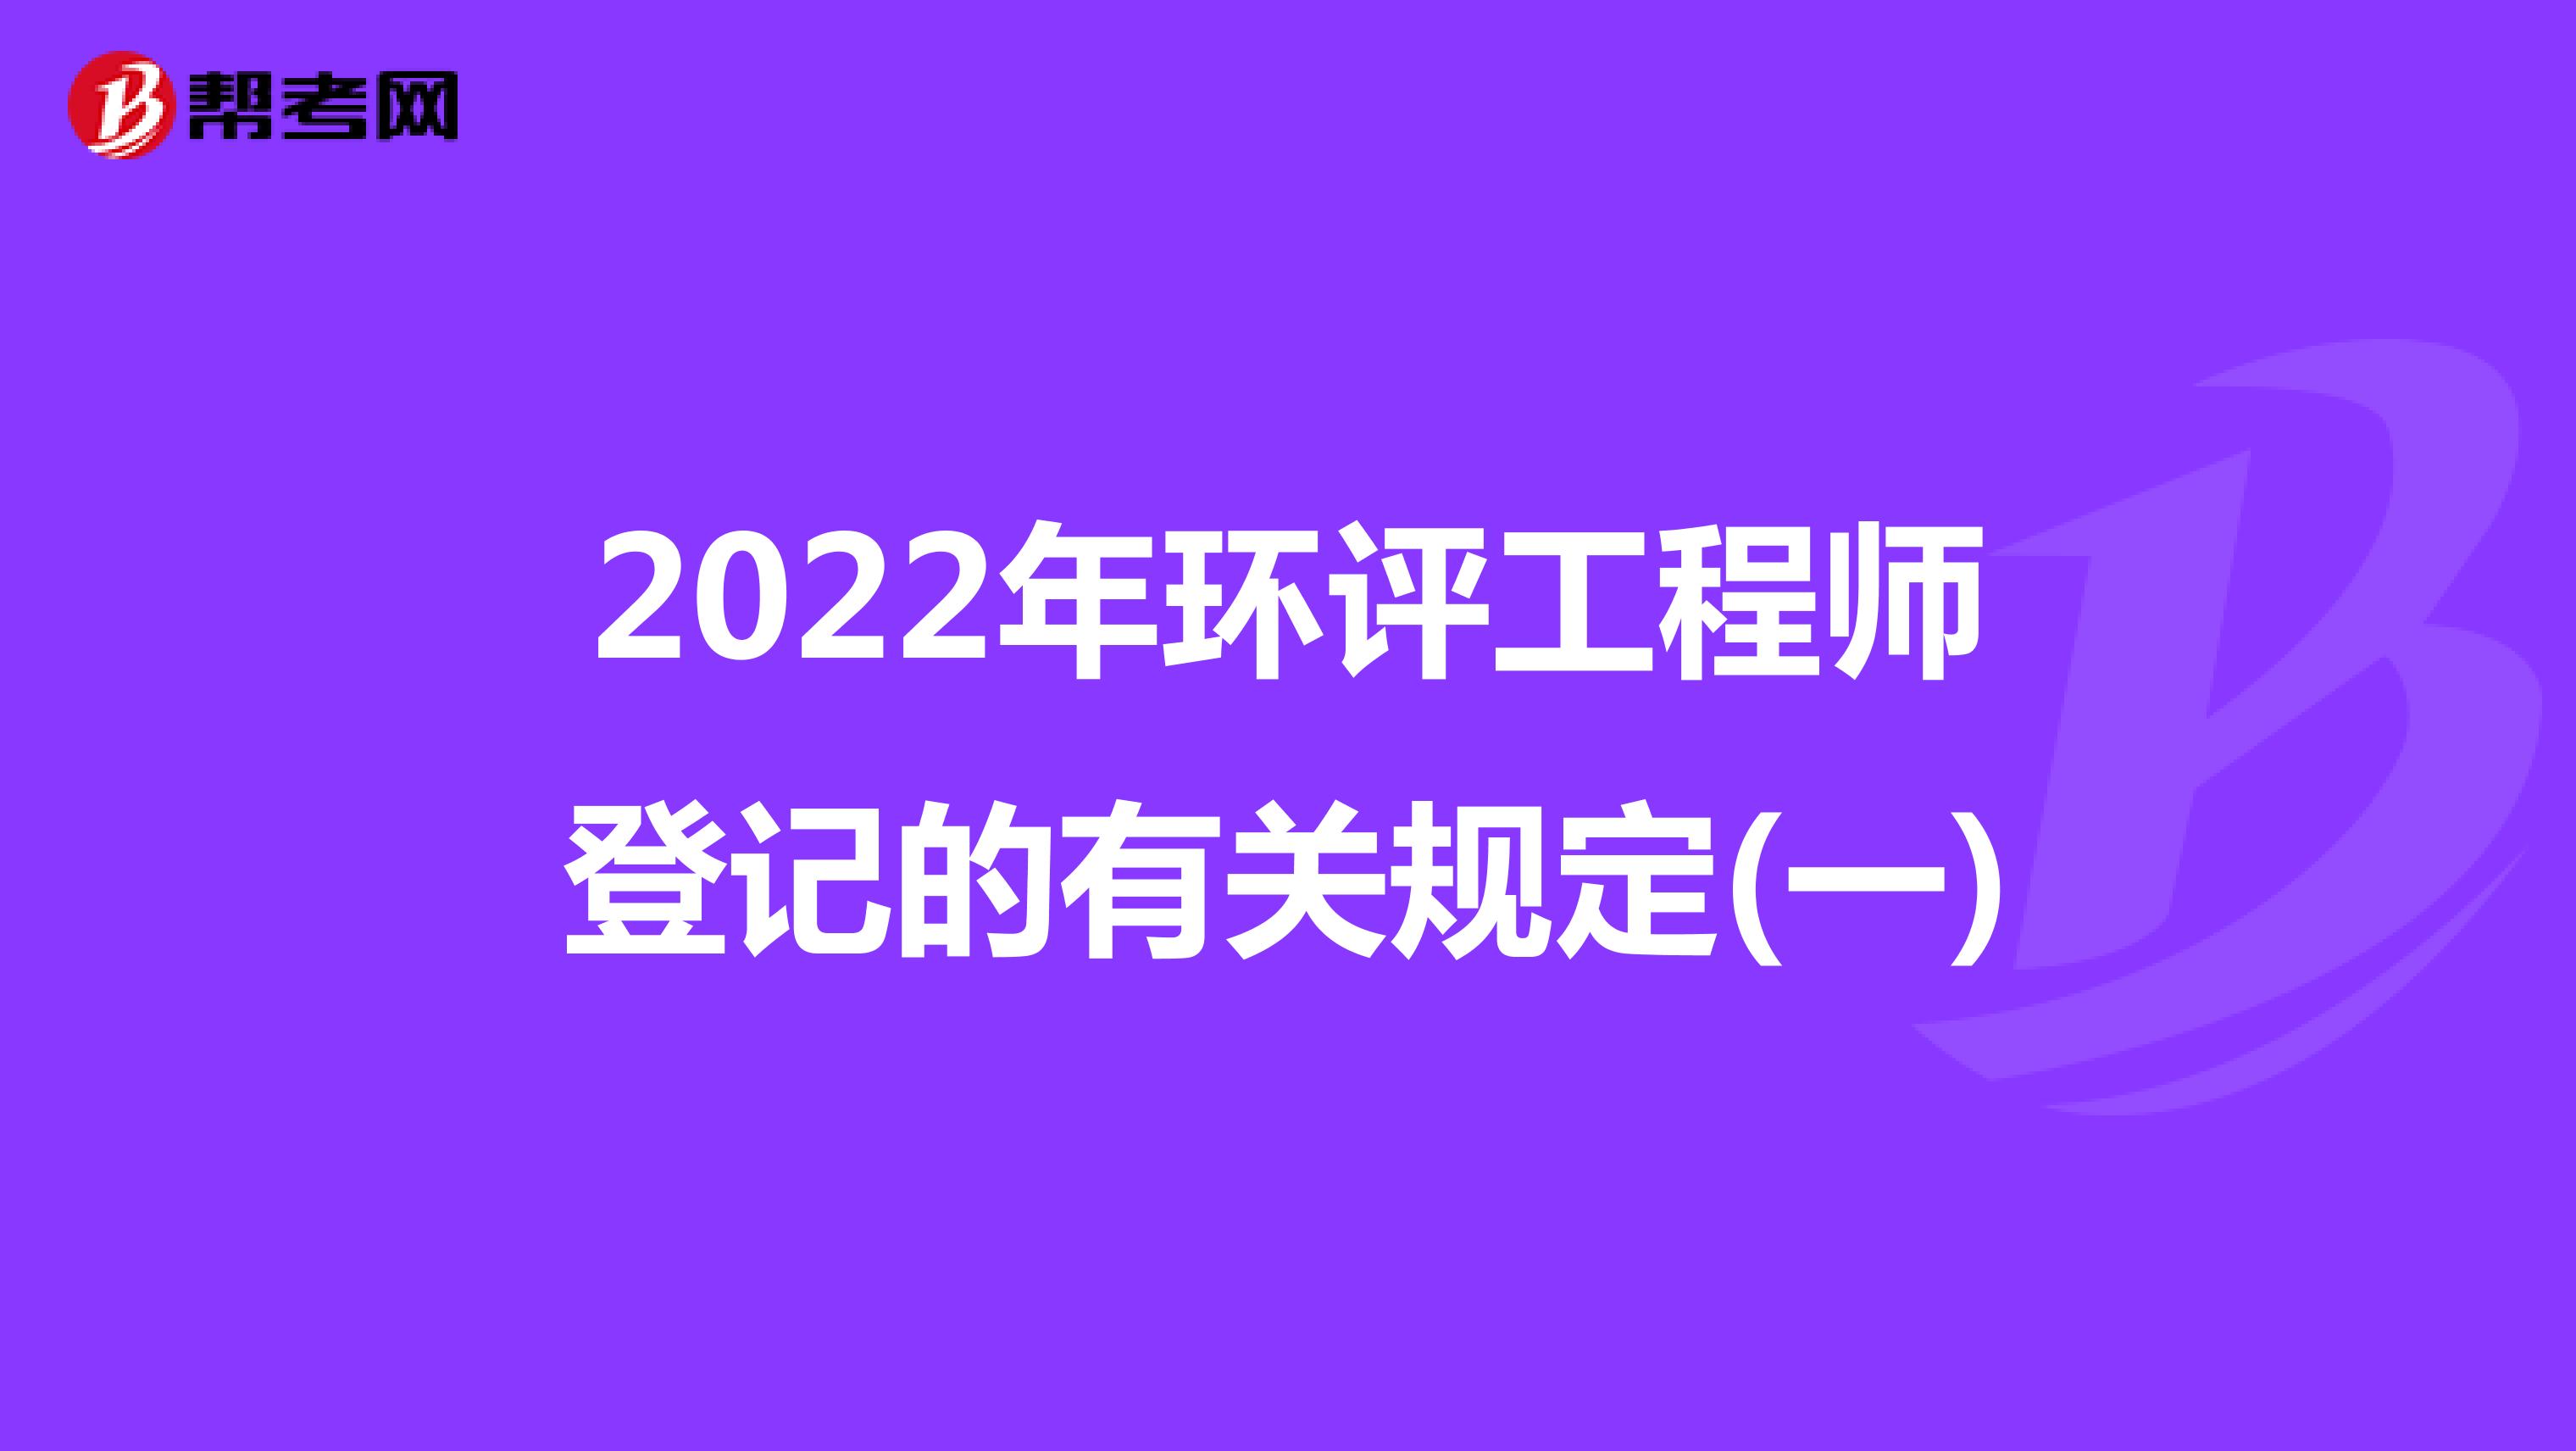 2022年环评工程师登记的有关规定(一)